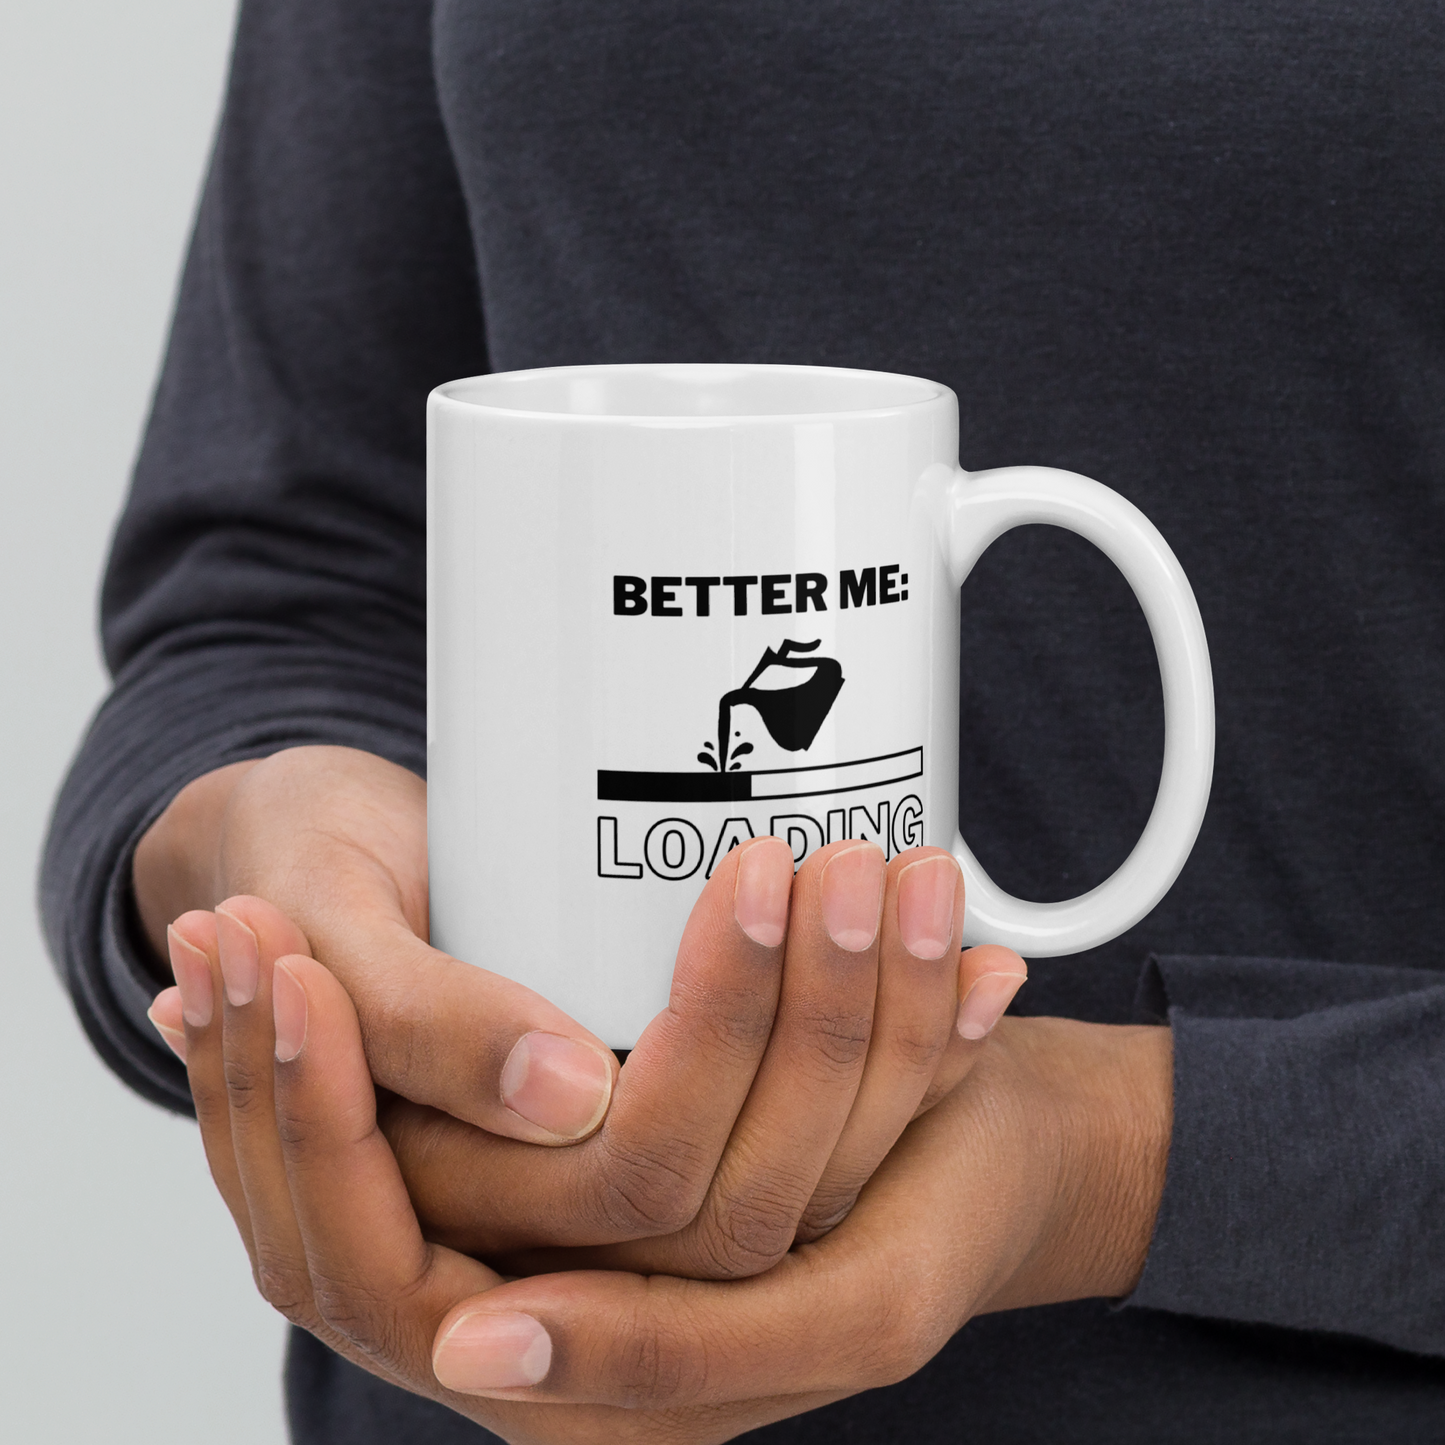 Better Me: Loading Mug